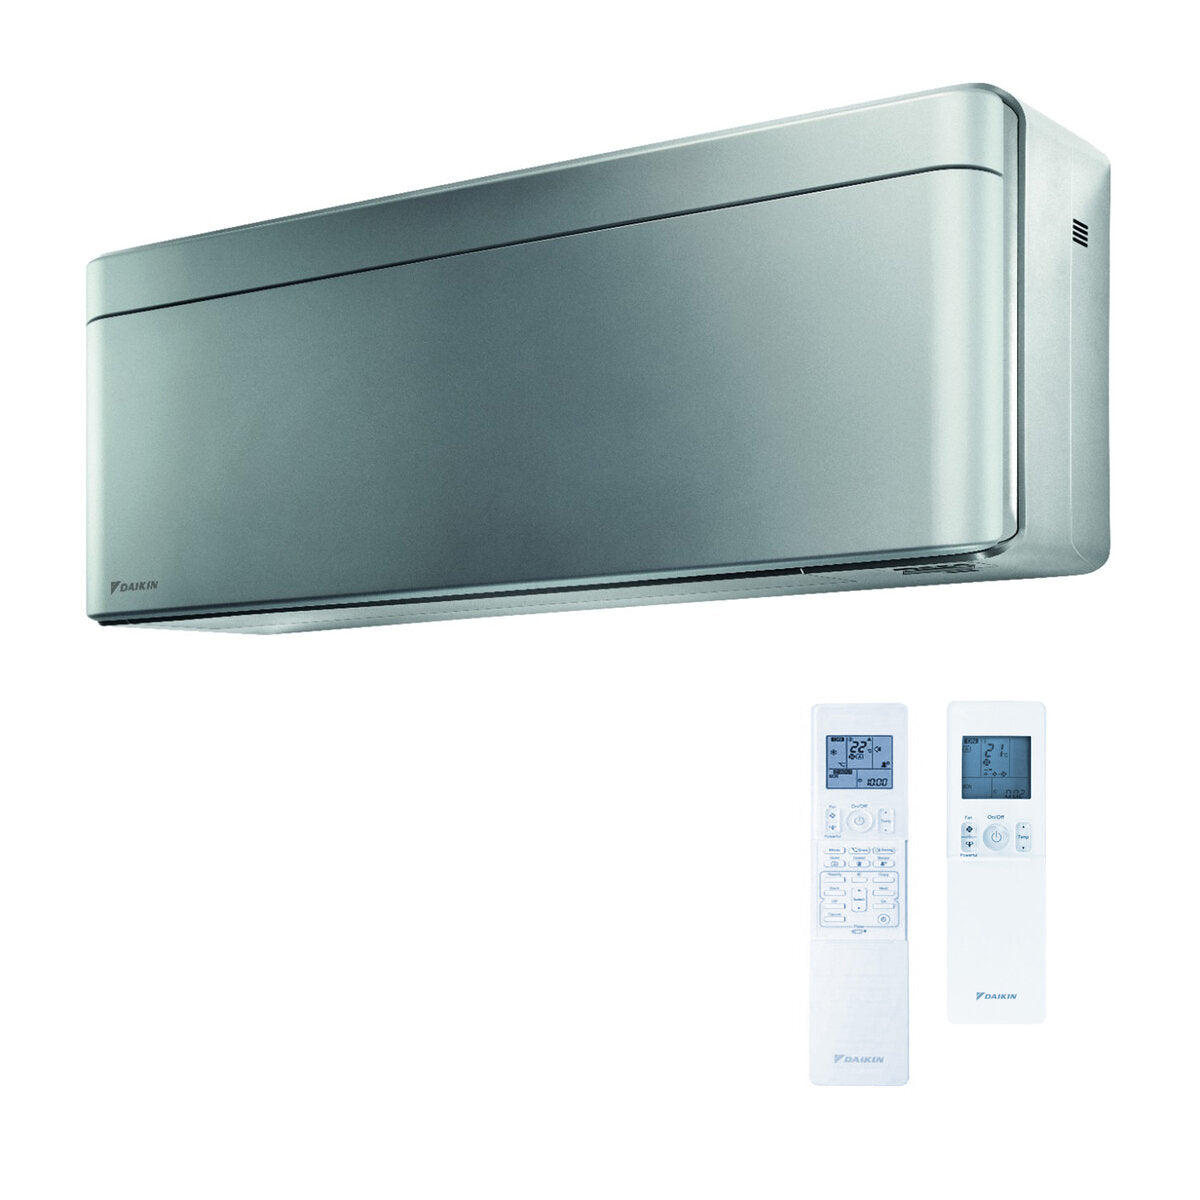 Daikin Stylish air conditioner penta split 7000 + 9000 + 9000 + 9000 + 18000 BTU inverter A ++ wifi outdoor unit 9 kW